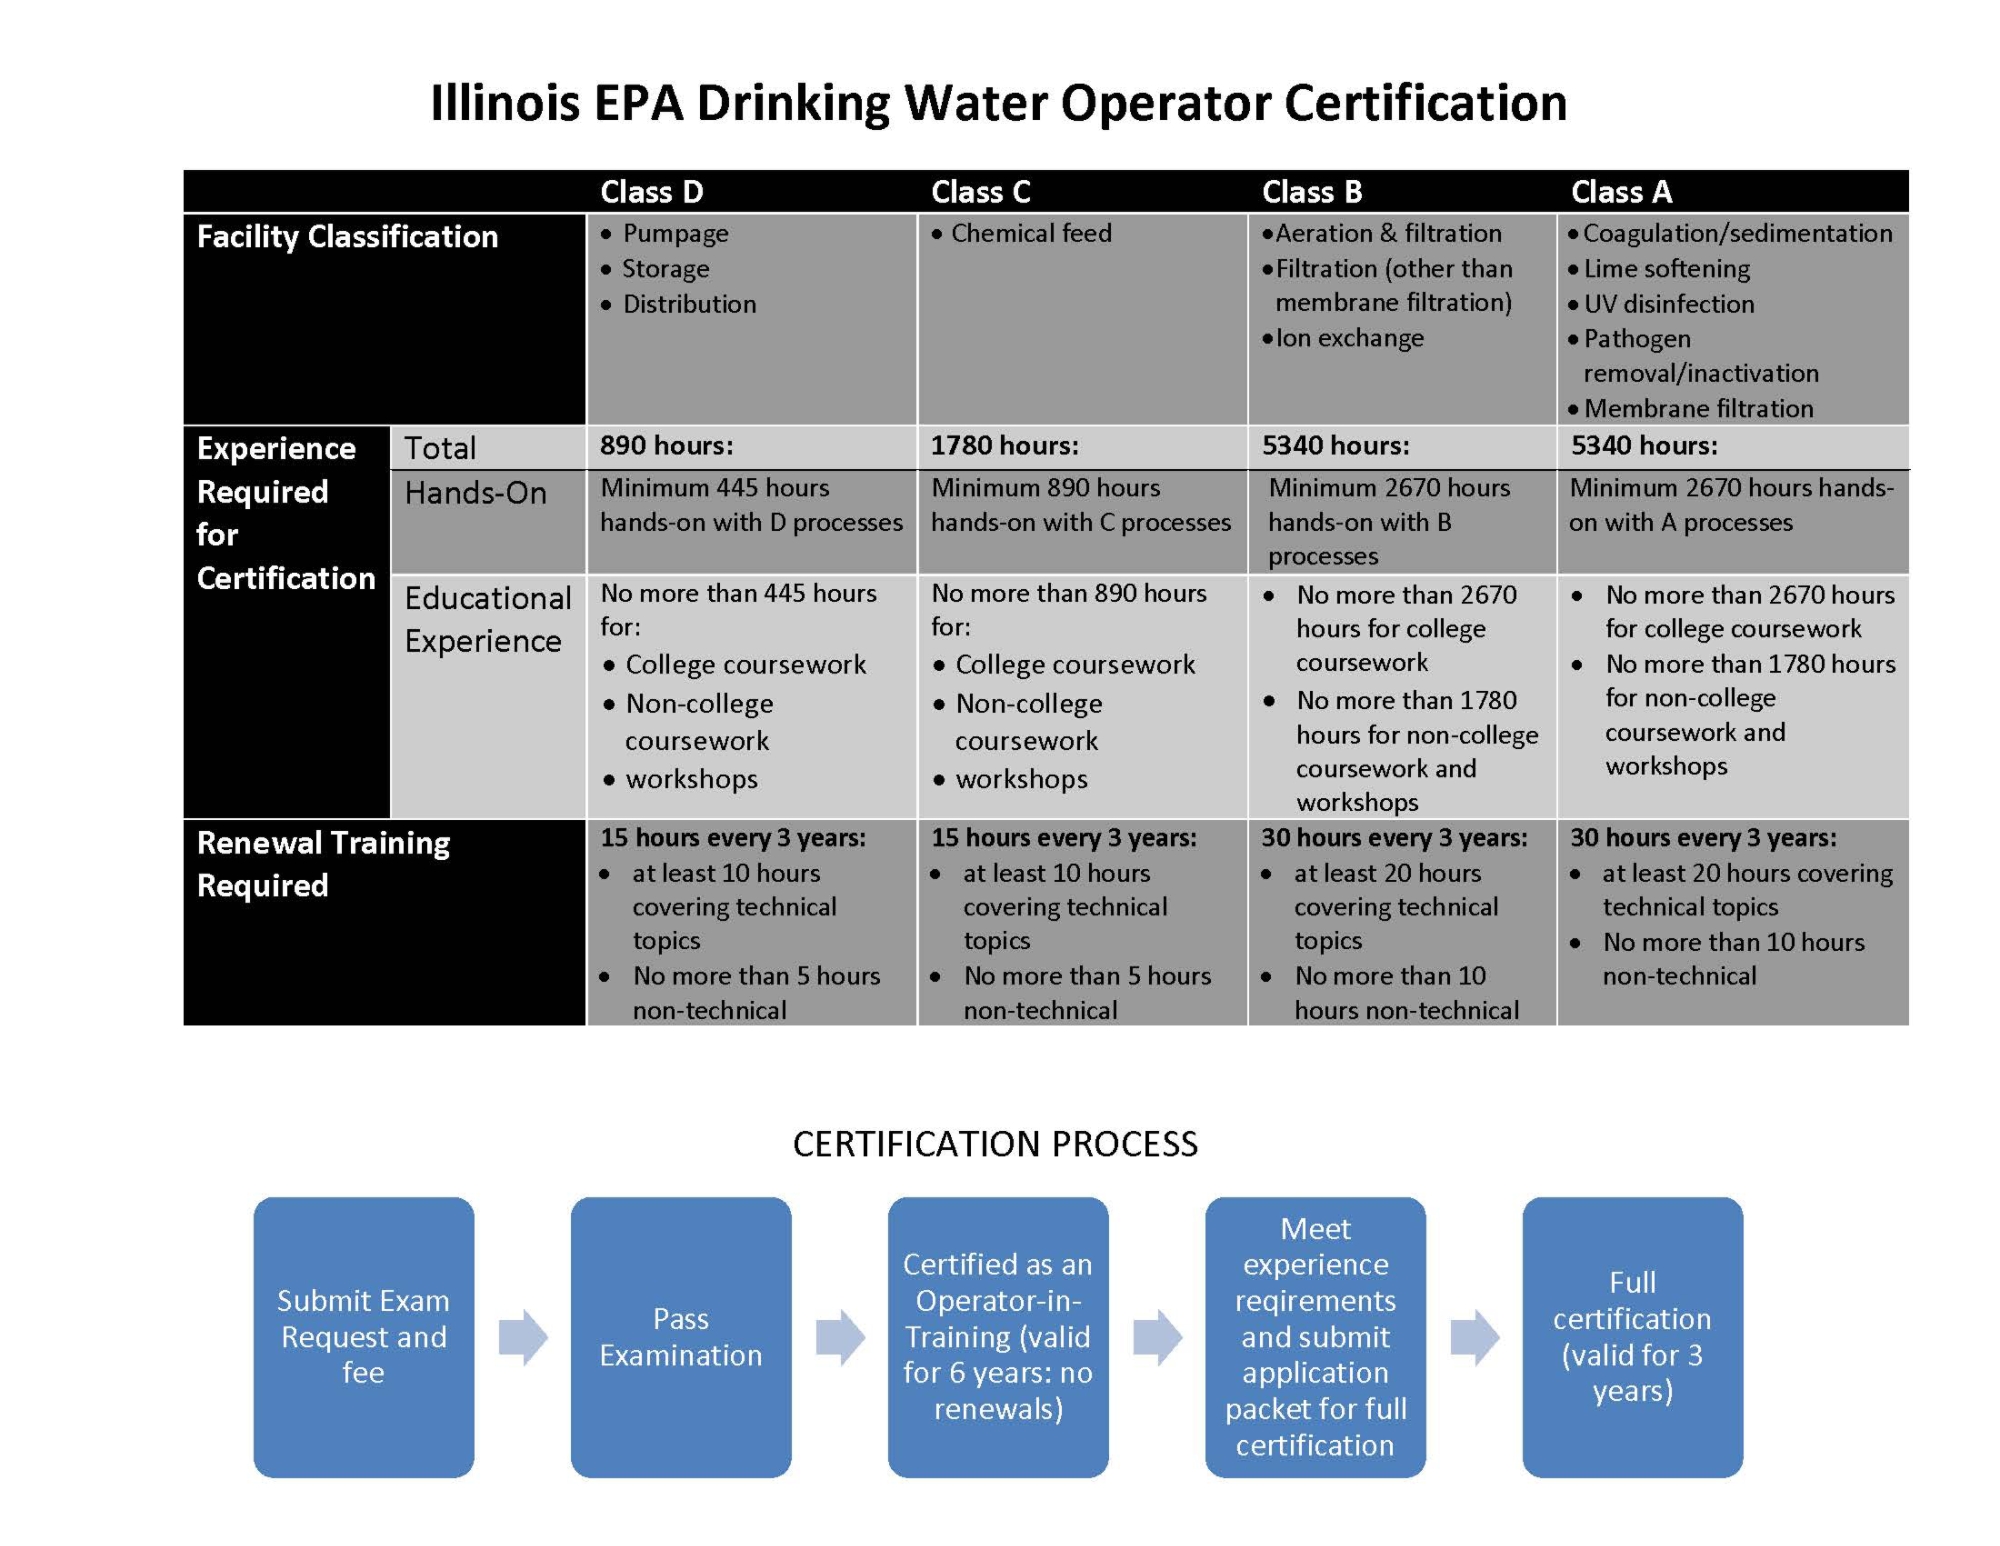 Illinois Drinking Water Operator Certification